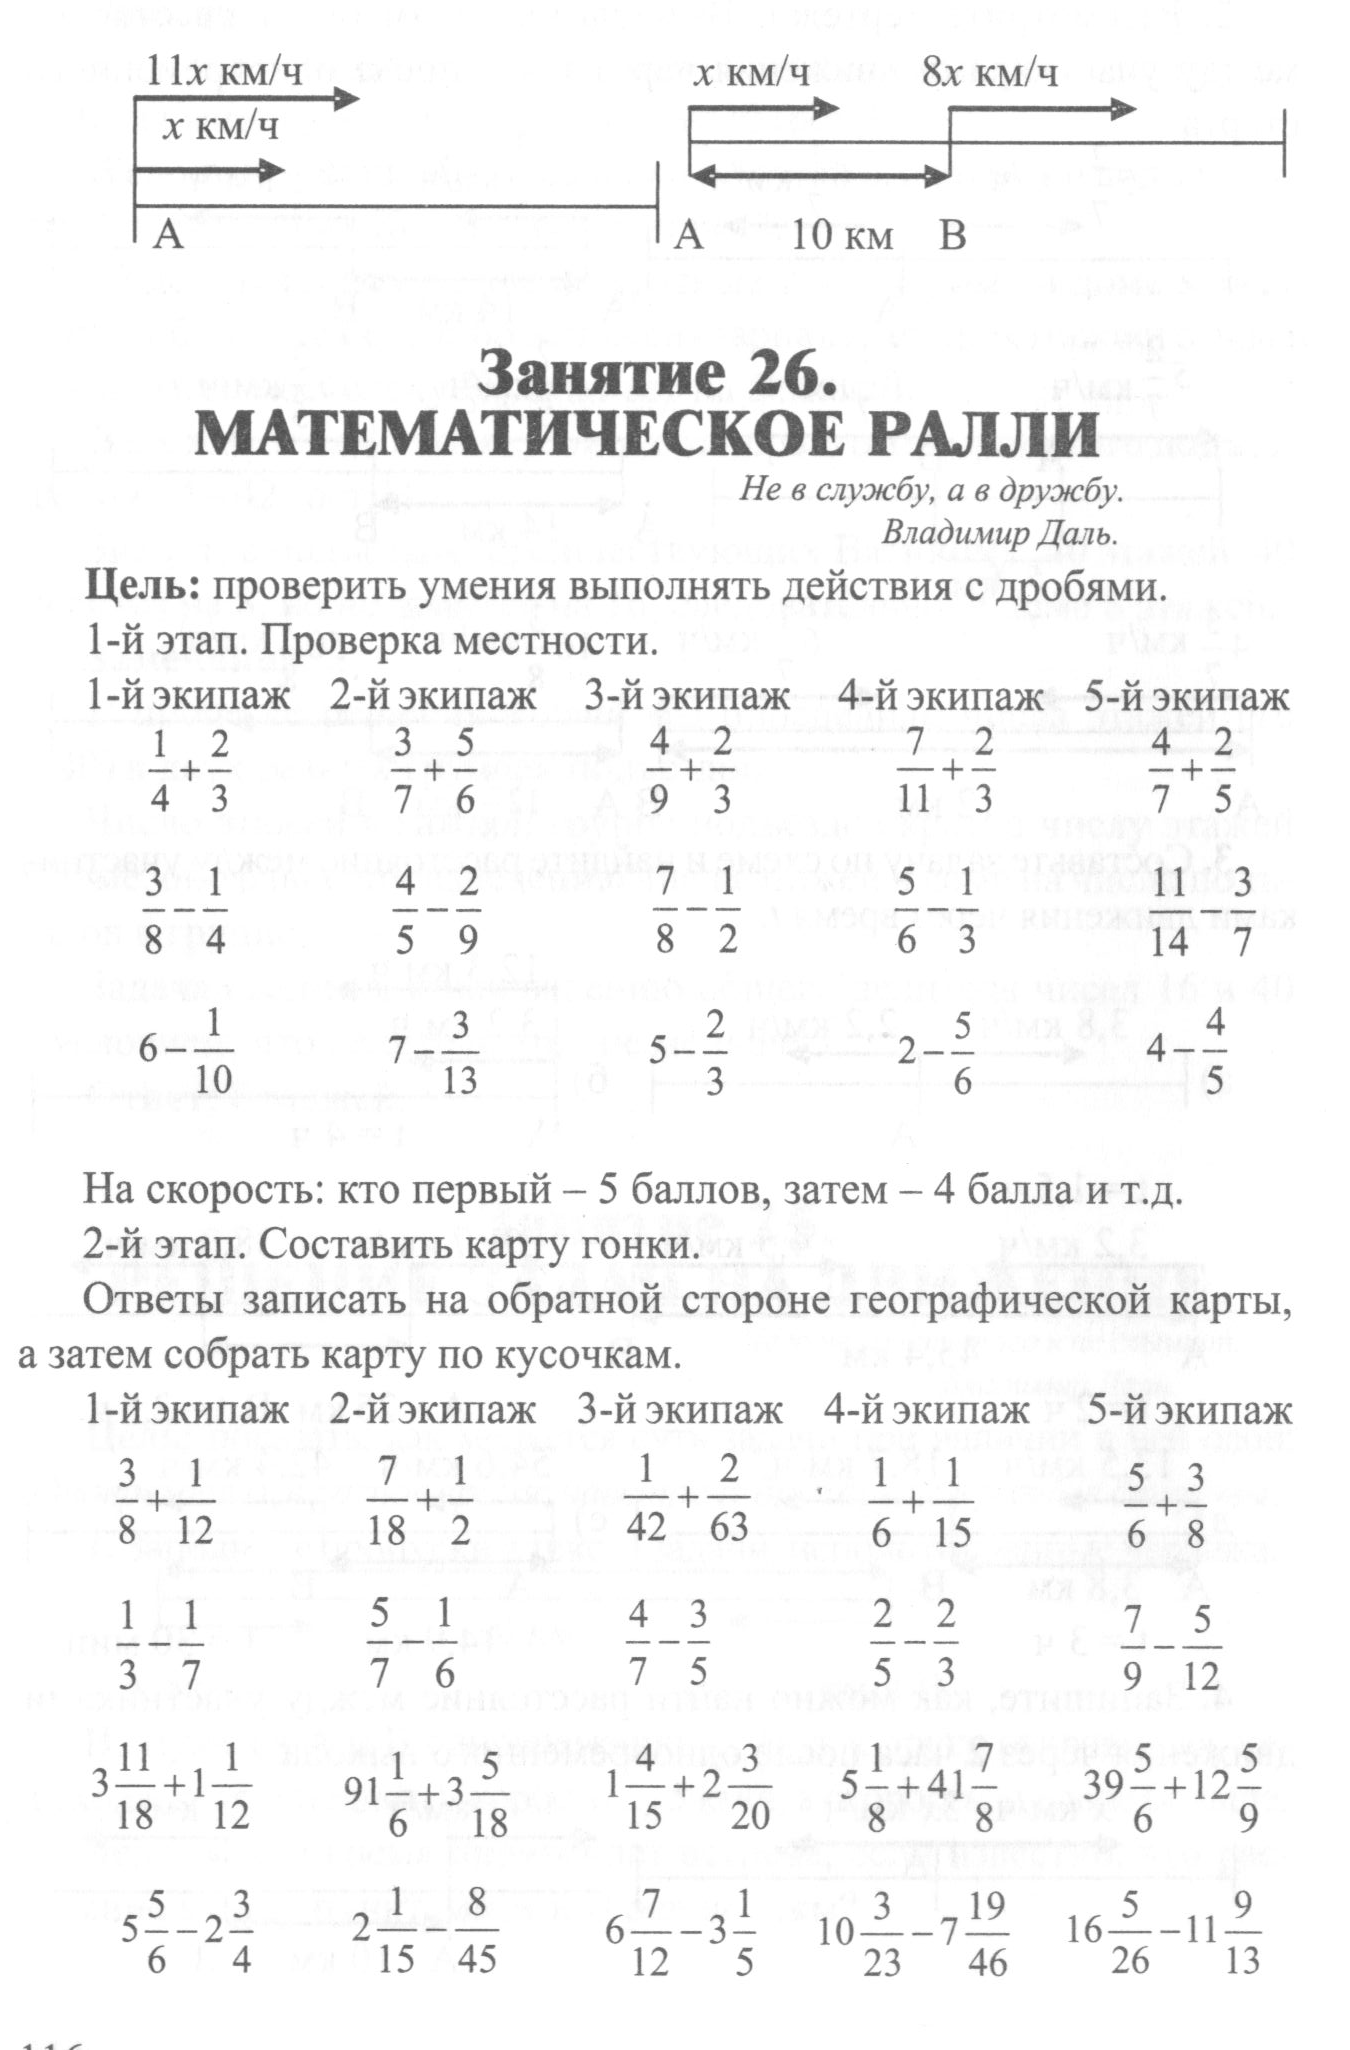 Программа внеурочной деятельности по математике (6 класс)